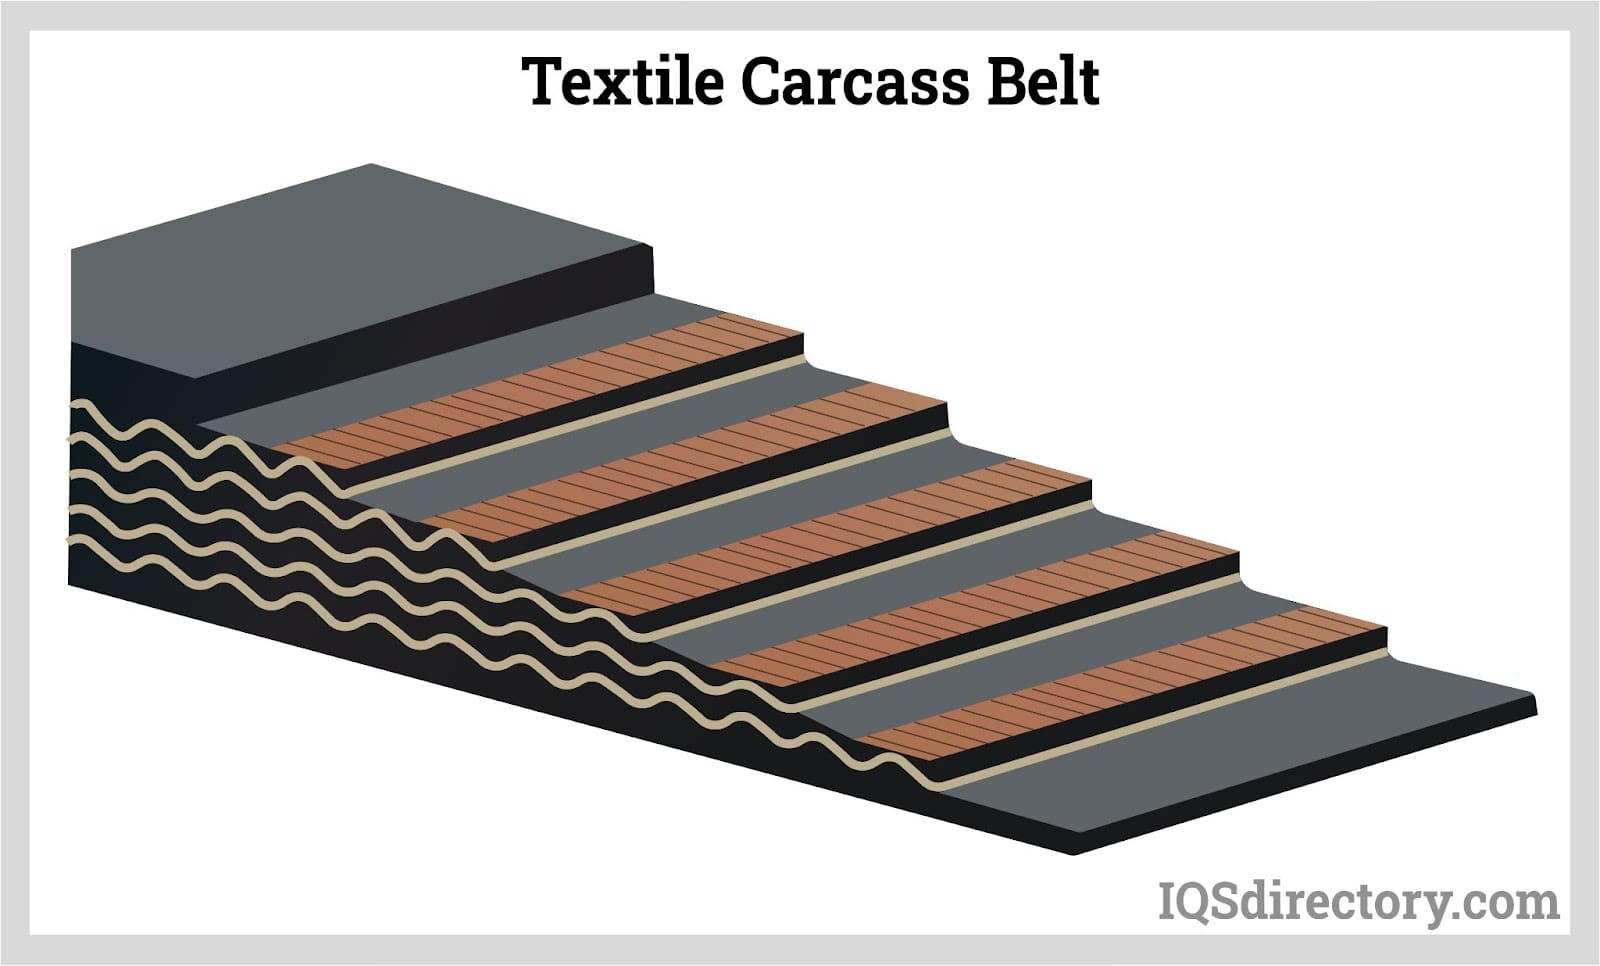 Textile Carcass Belt